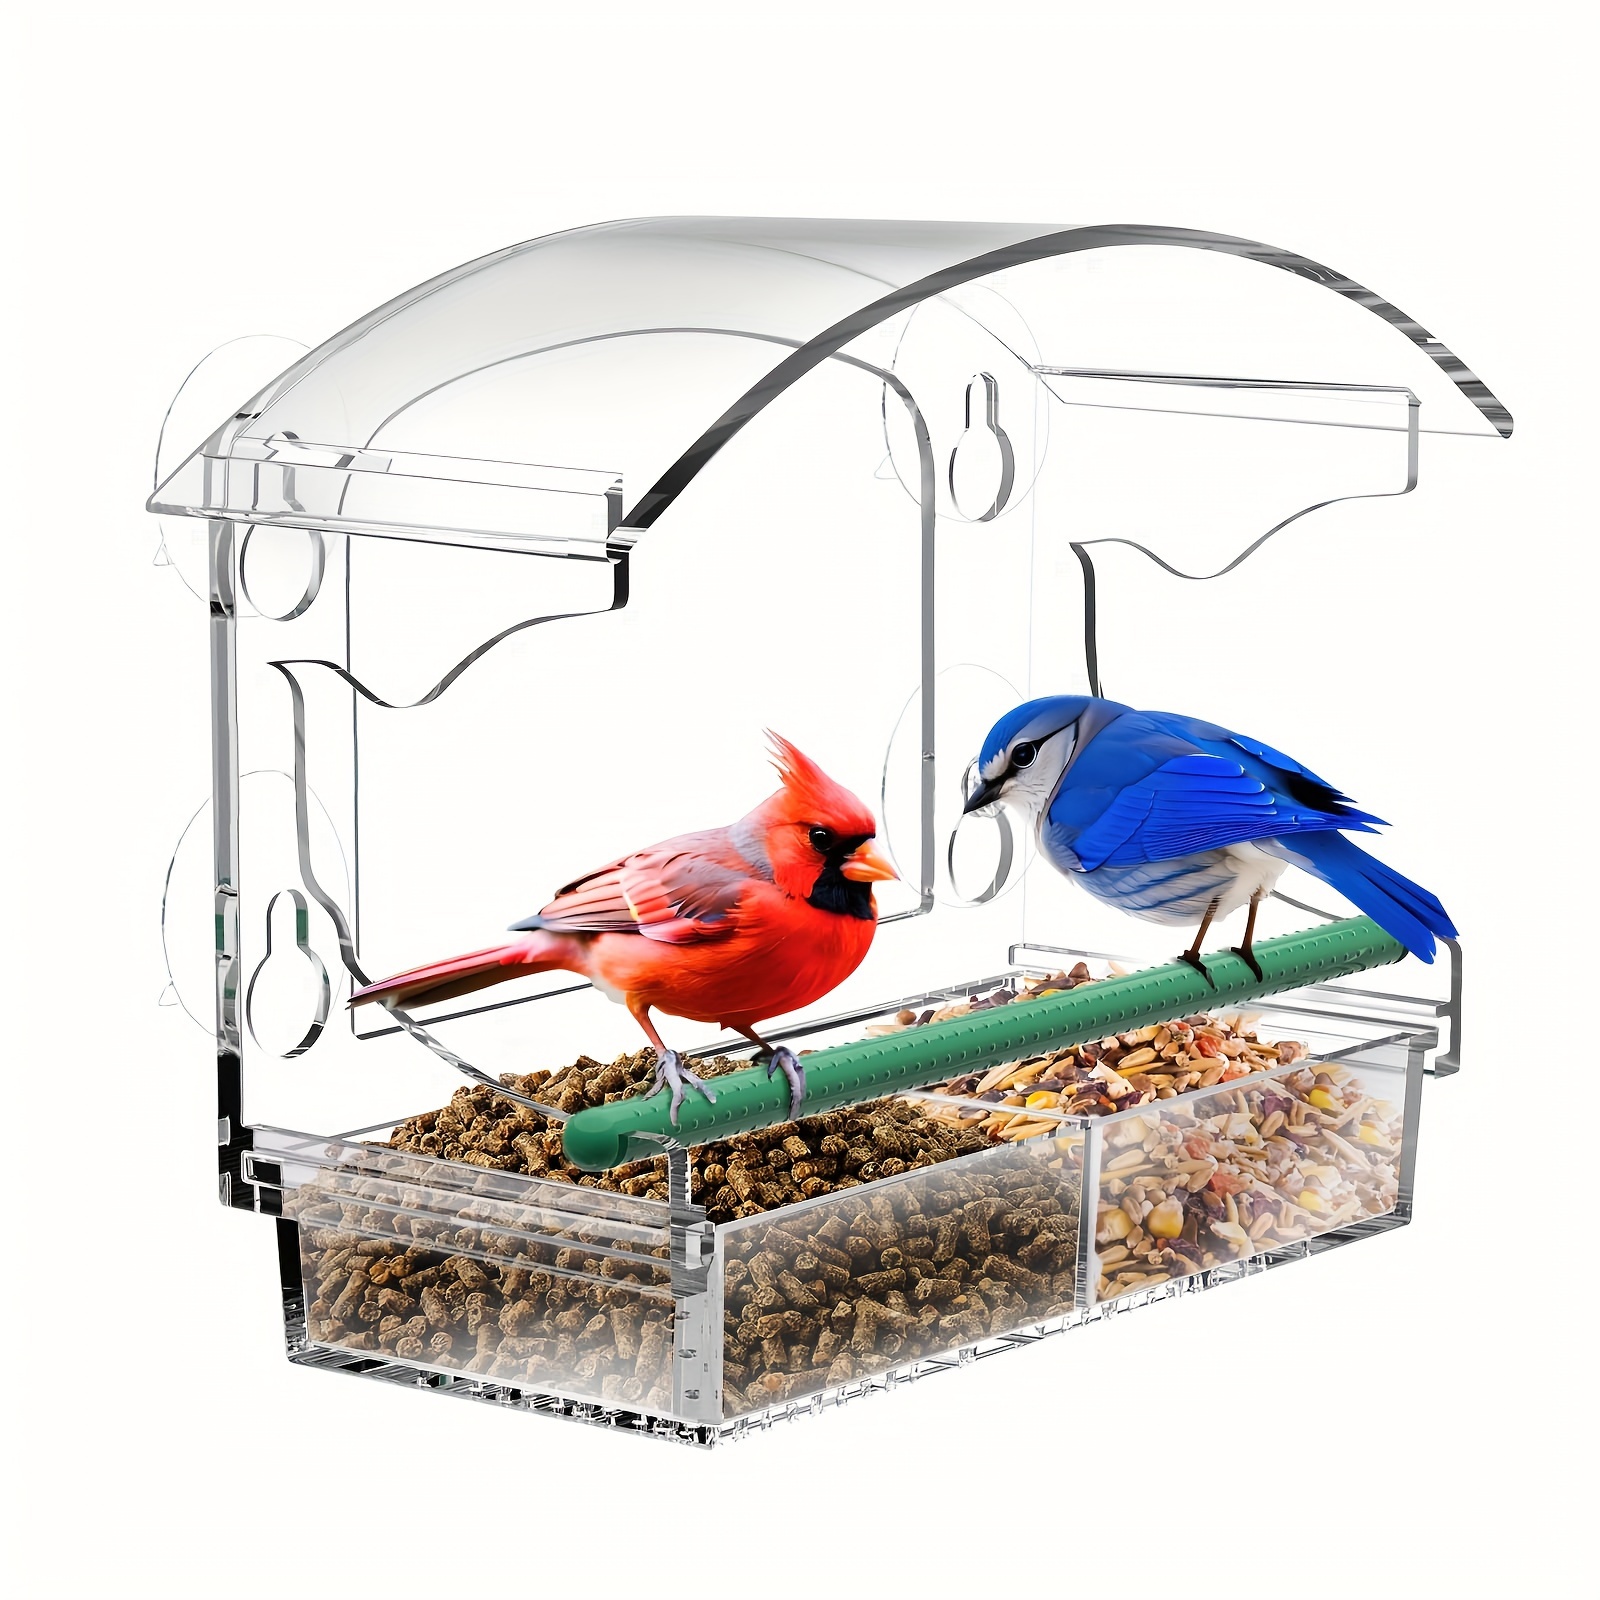 Fenêtre Mangeoire à Oiseaux avec Une Forte Aspiration Tasses et